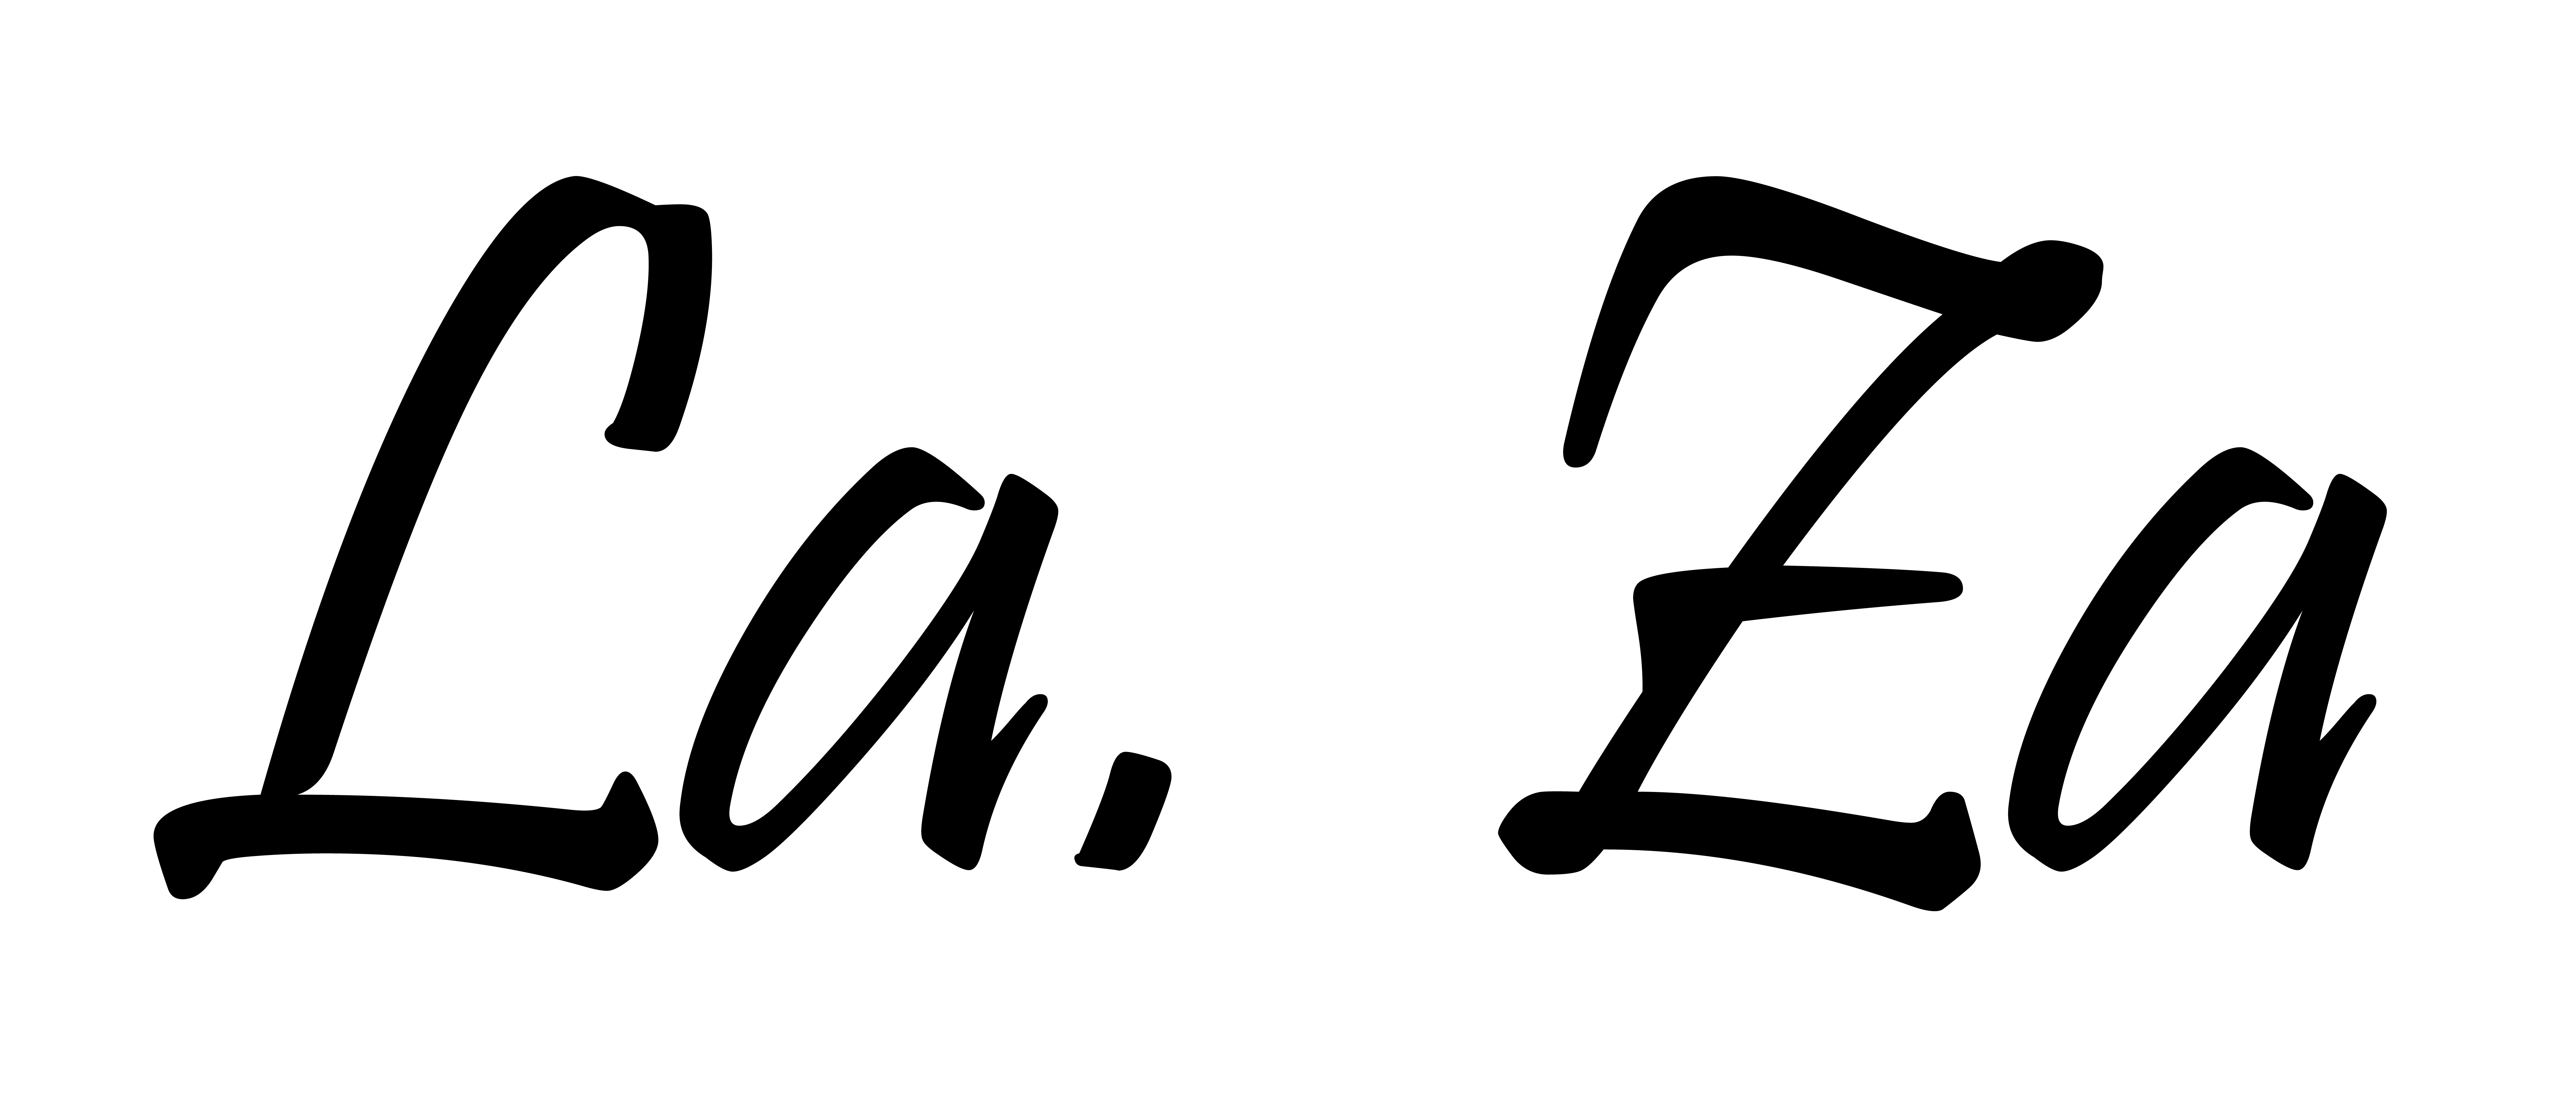 Logo La za pezzotto-01